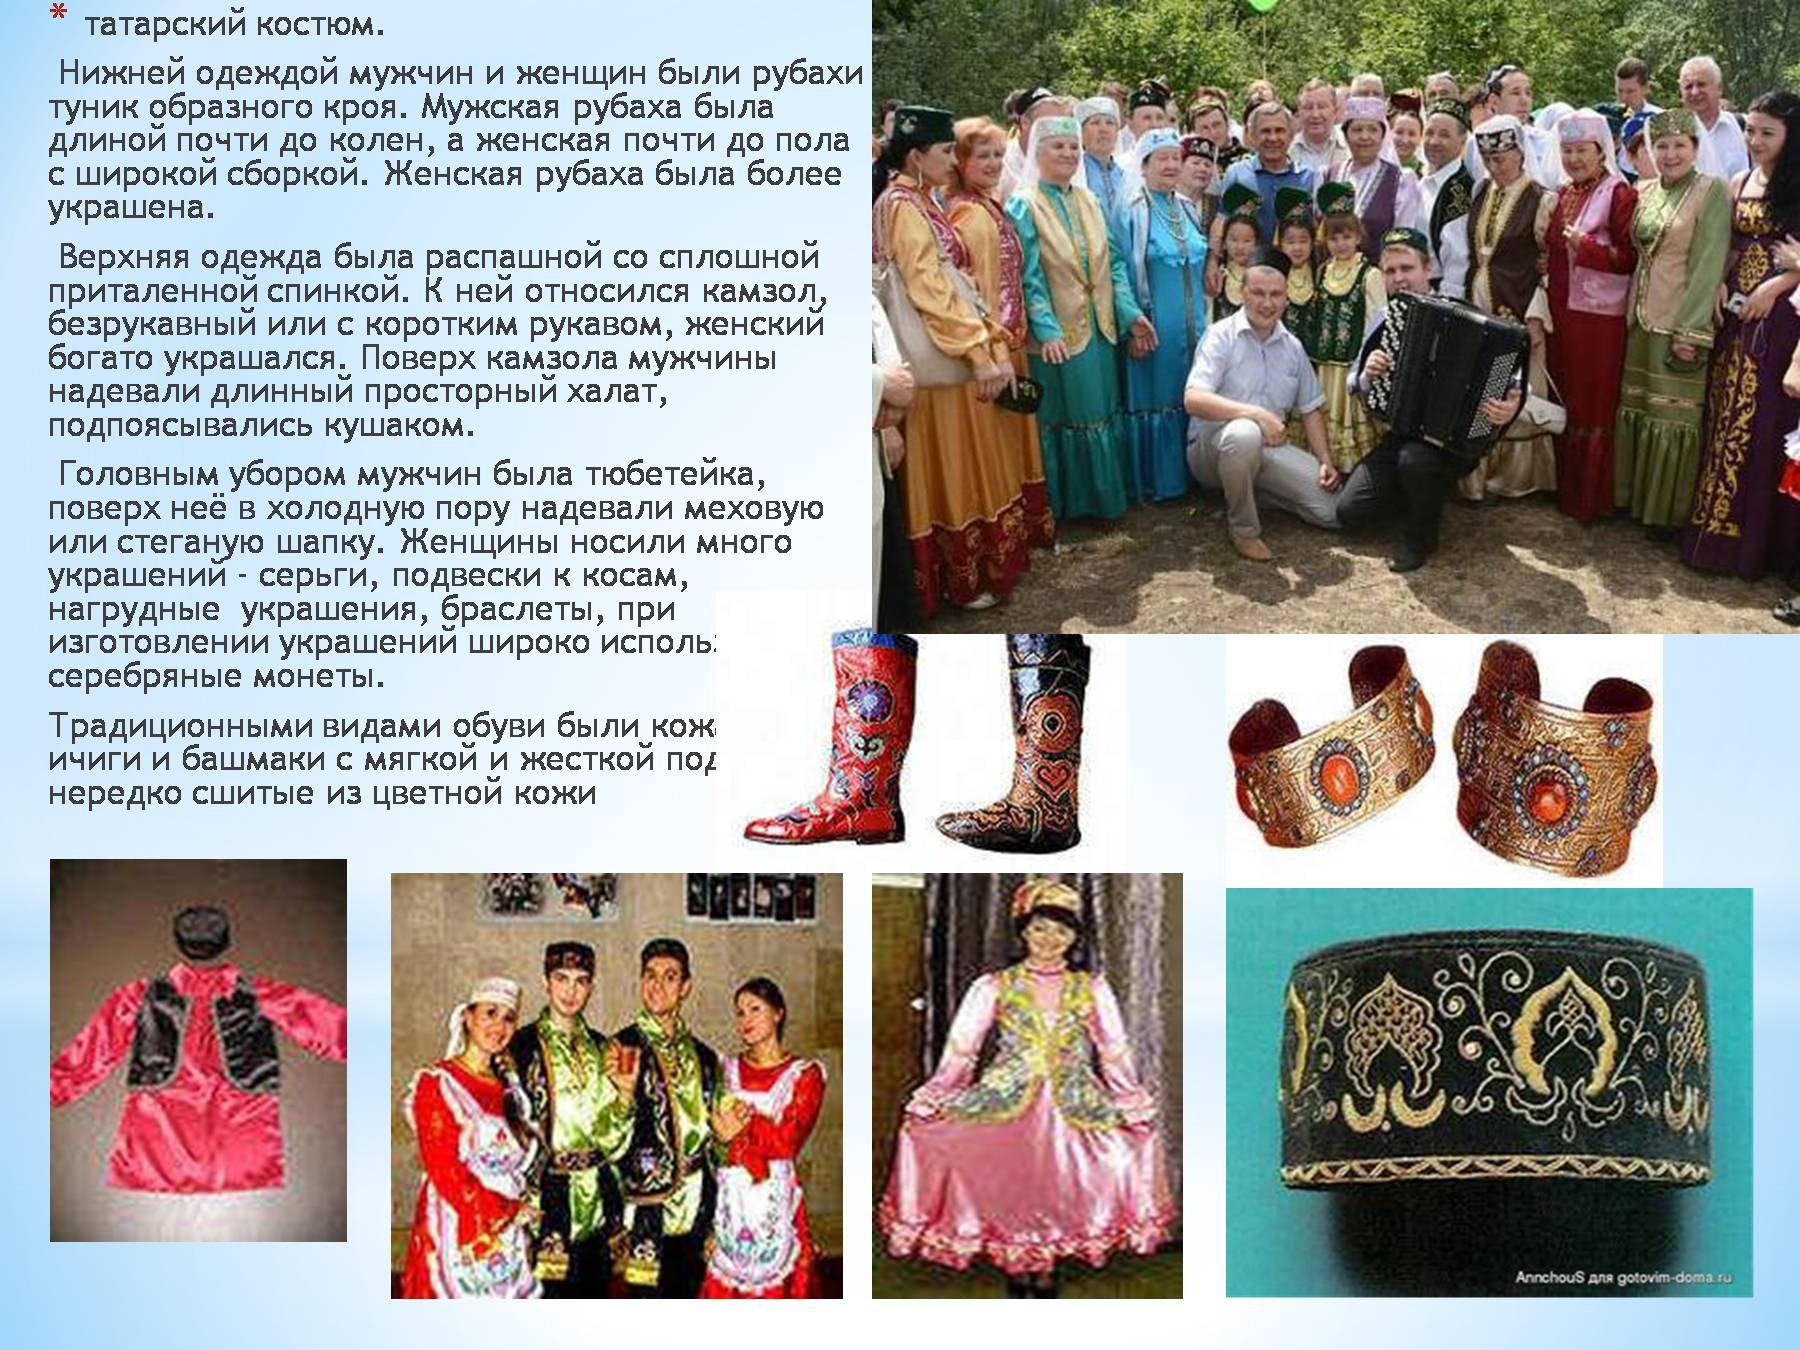 Татарский народ культура традиции и обычаи